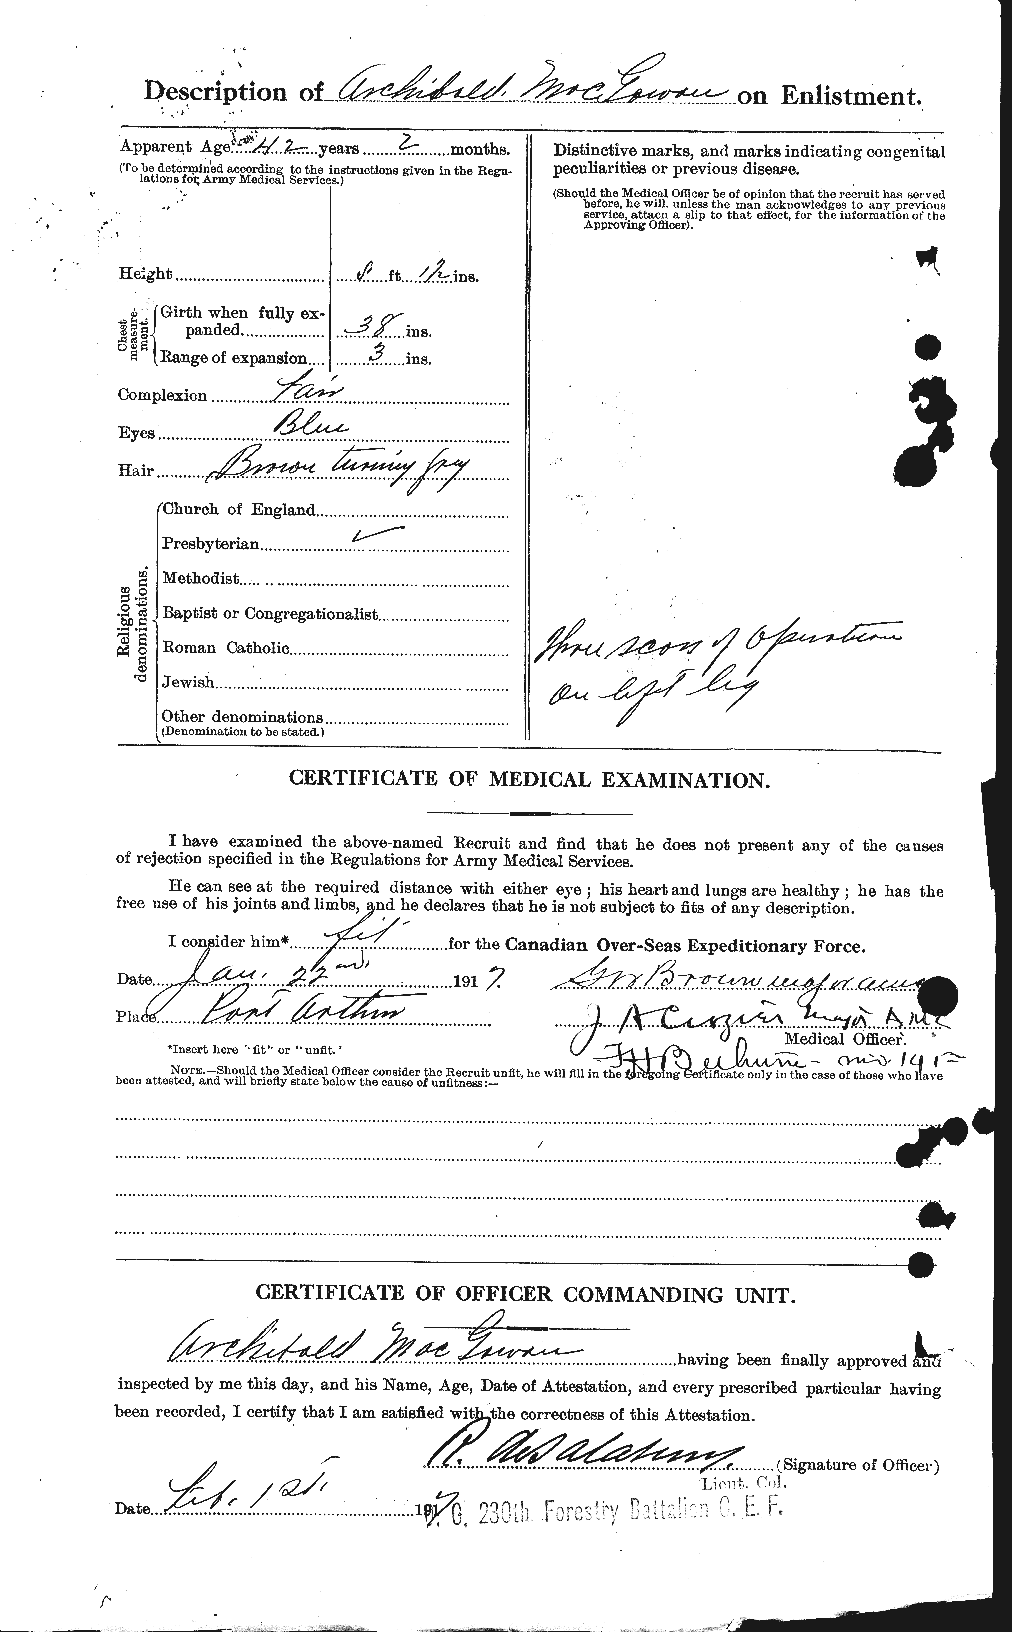 Dossiers du Personnel de la Première Guerre mondiale - CEC 522543b